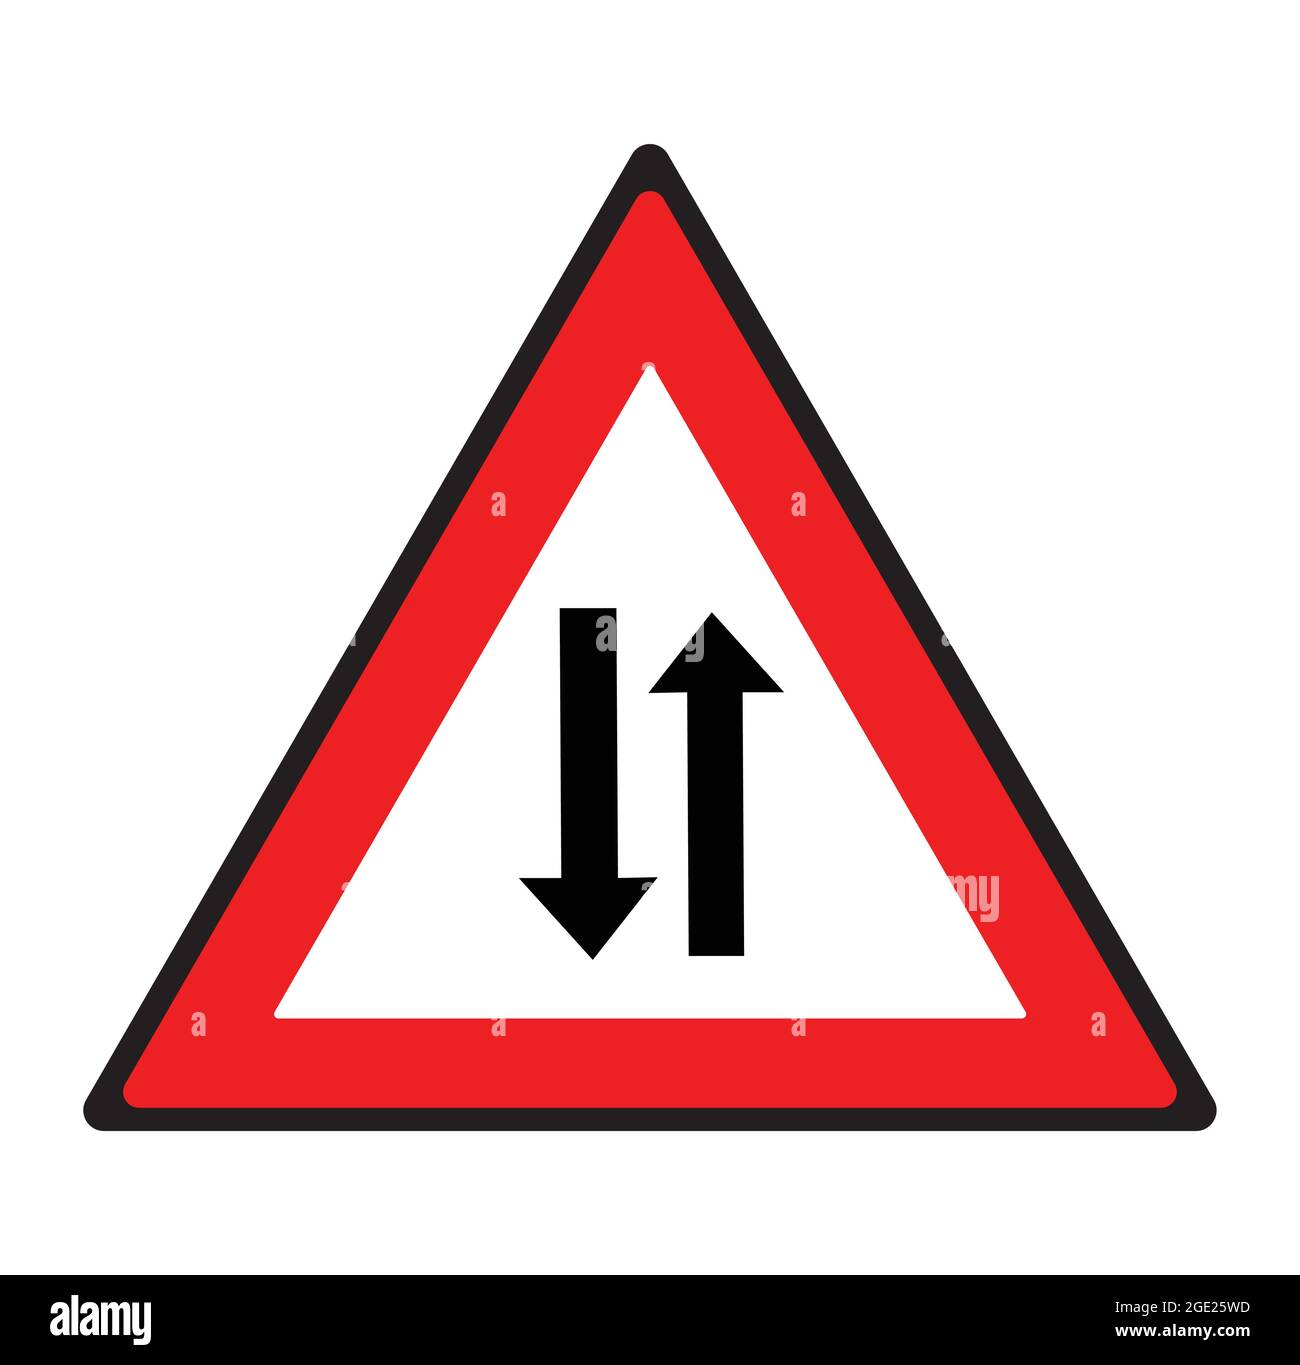 Zwei-Wege-Straßenschild. Sicherheitssymbol. Stock Vektor